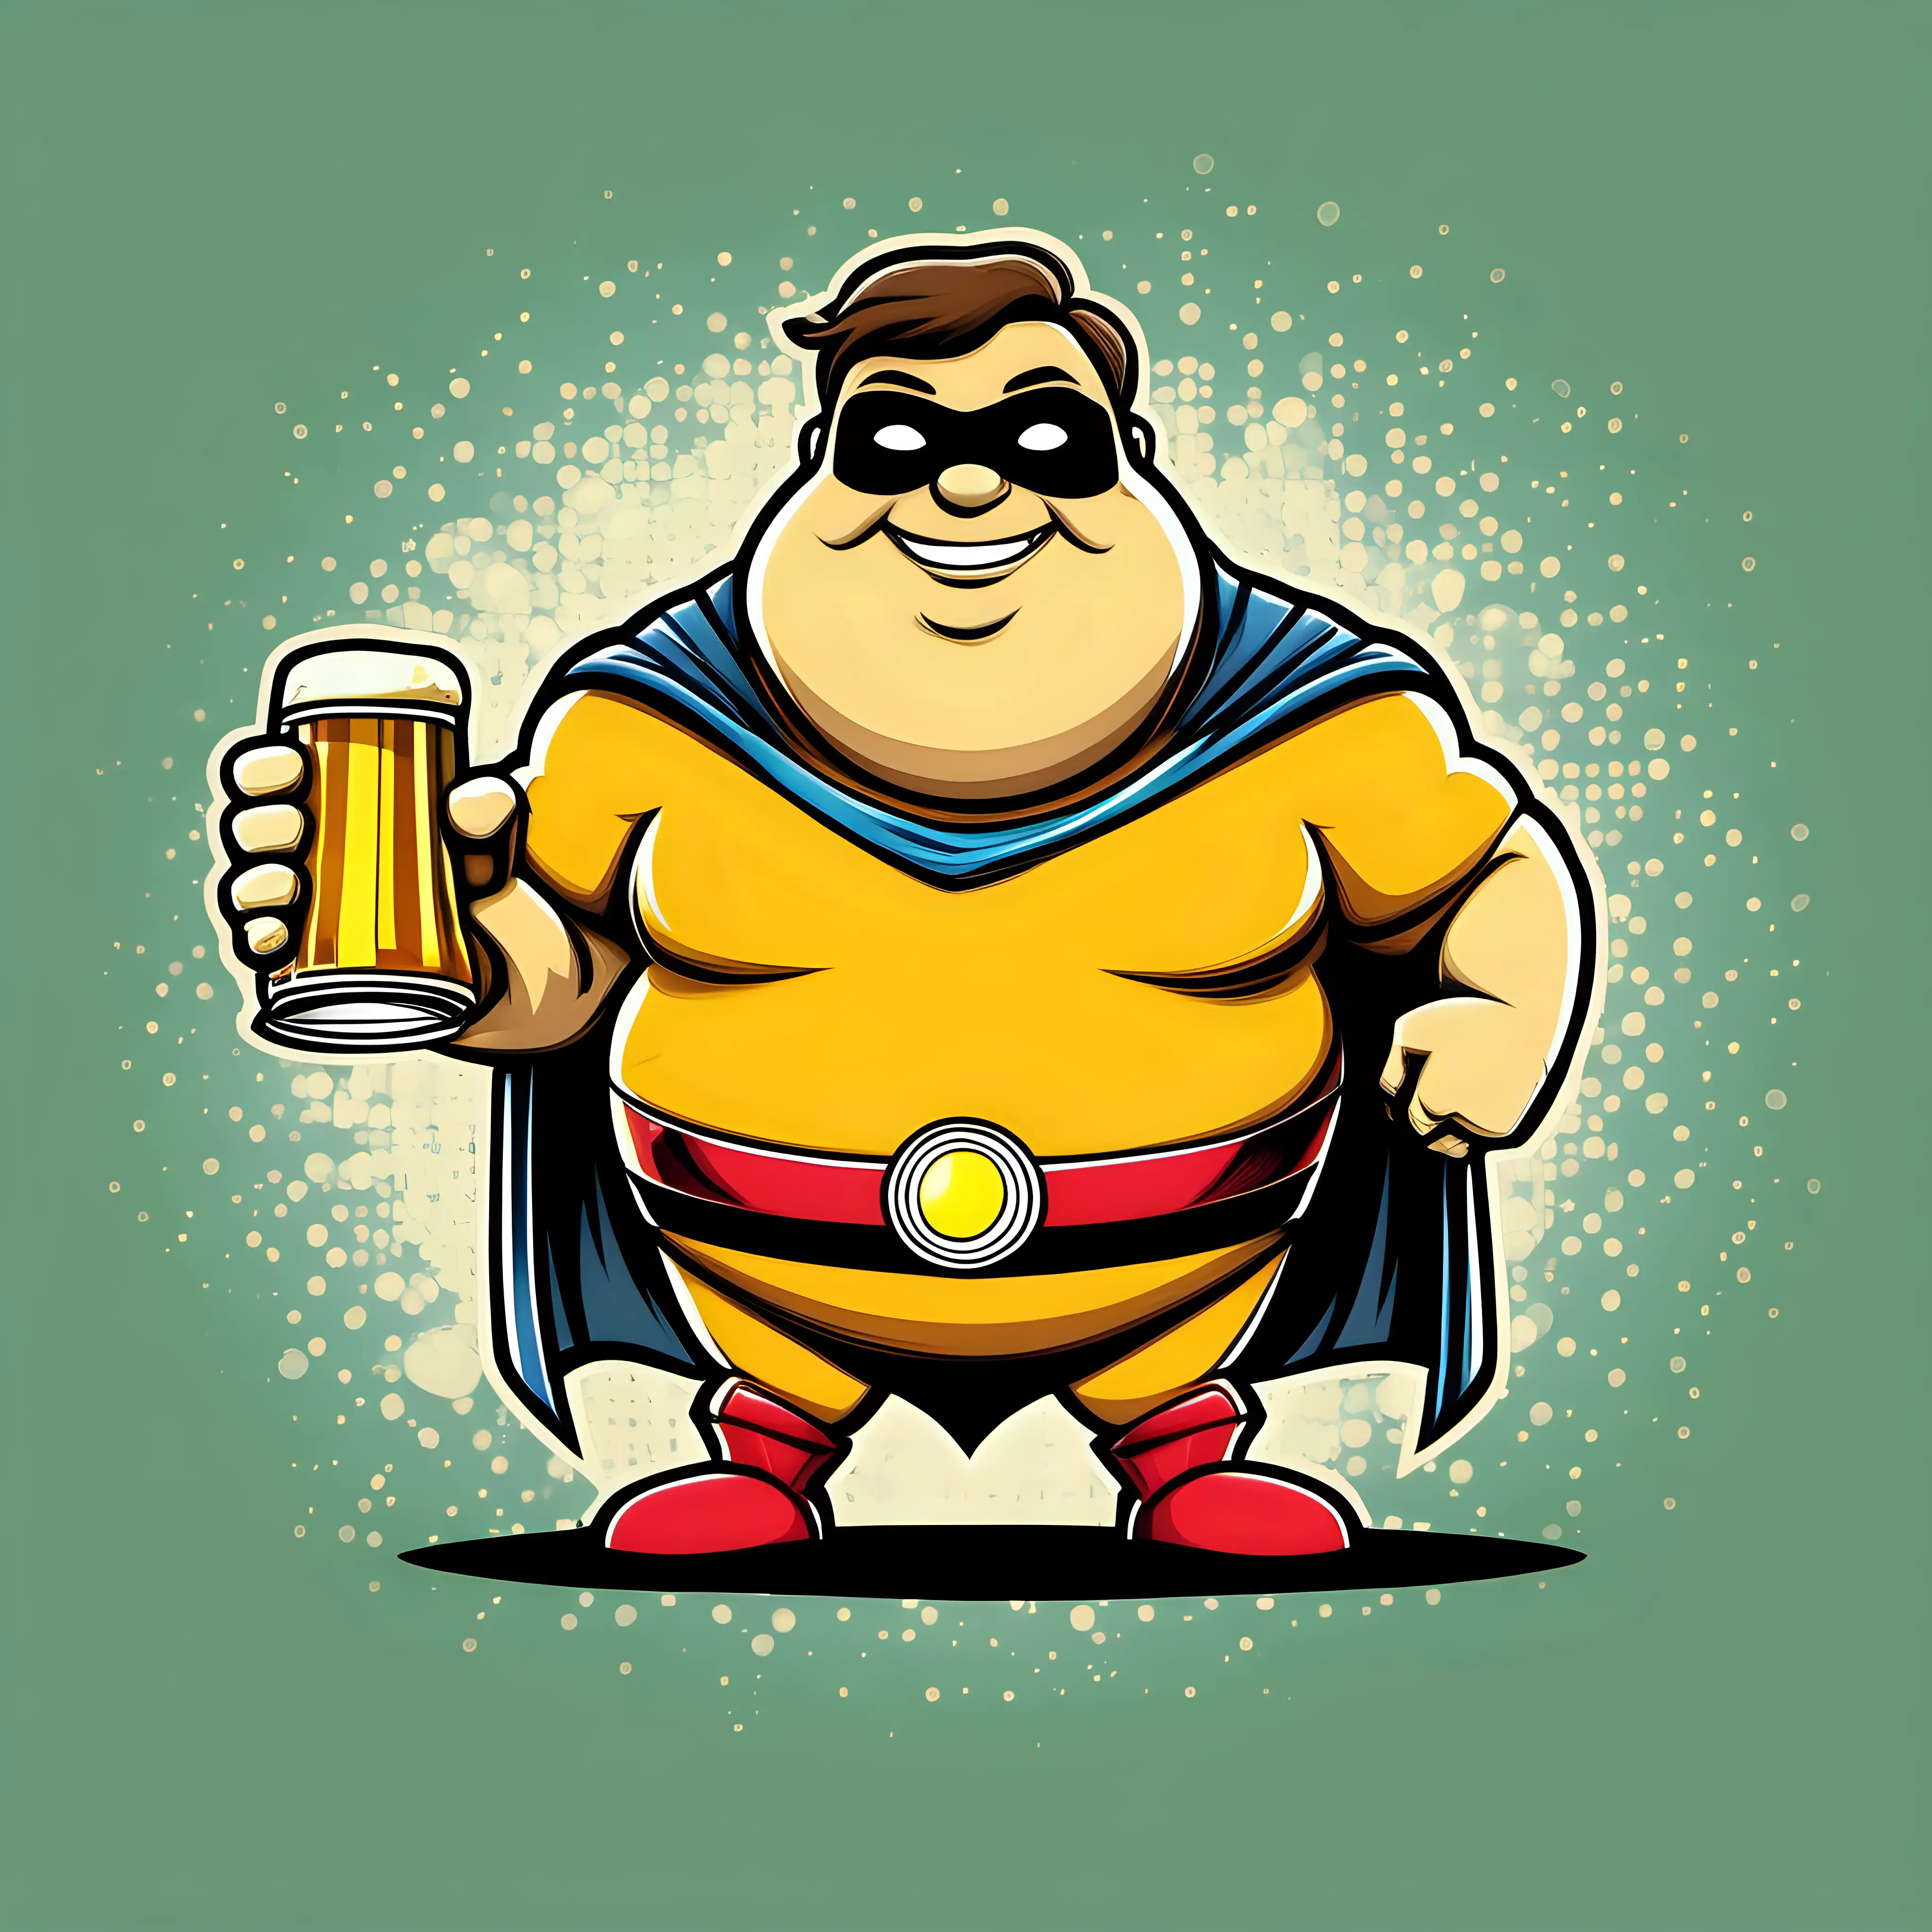 Cheerful Chubby Superhero Beerman Enjoying a Frothy Brew